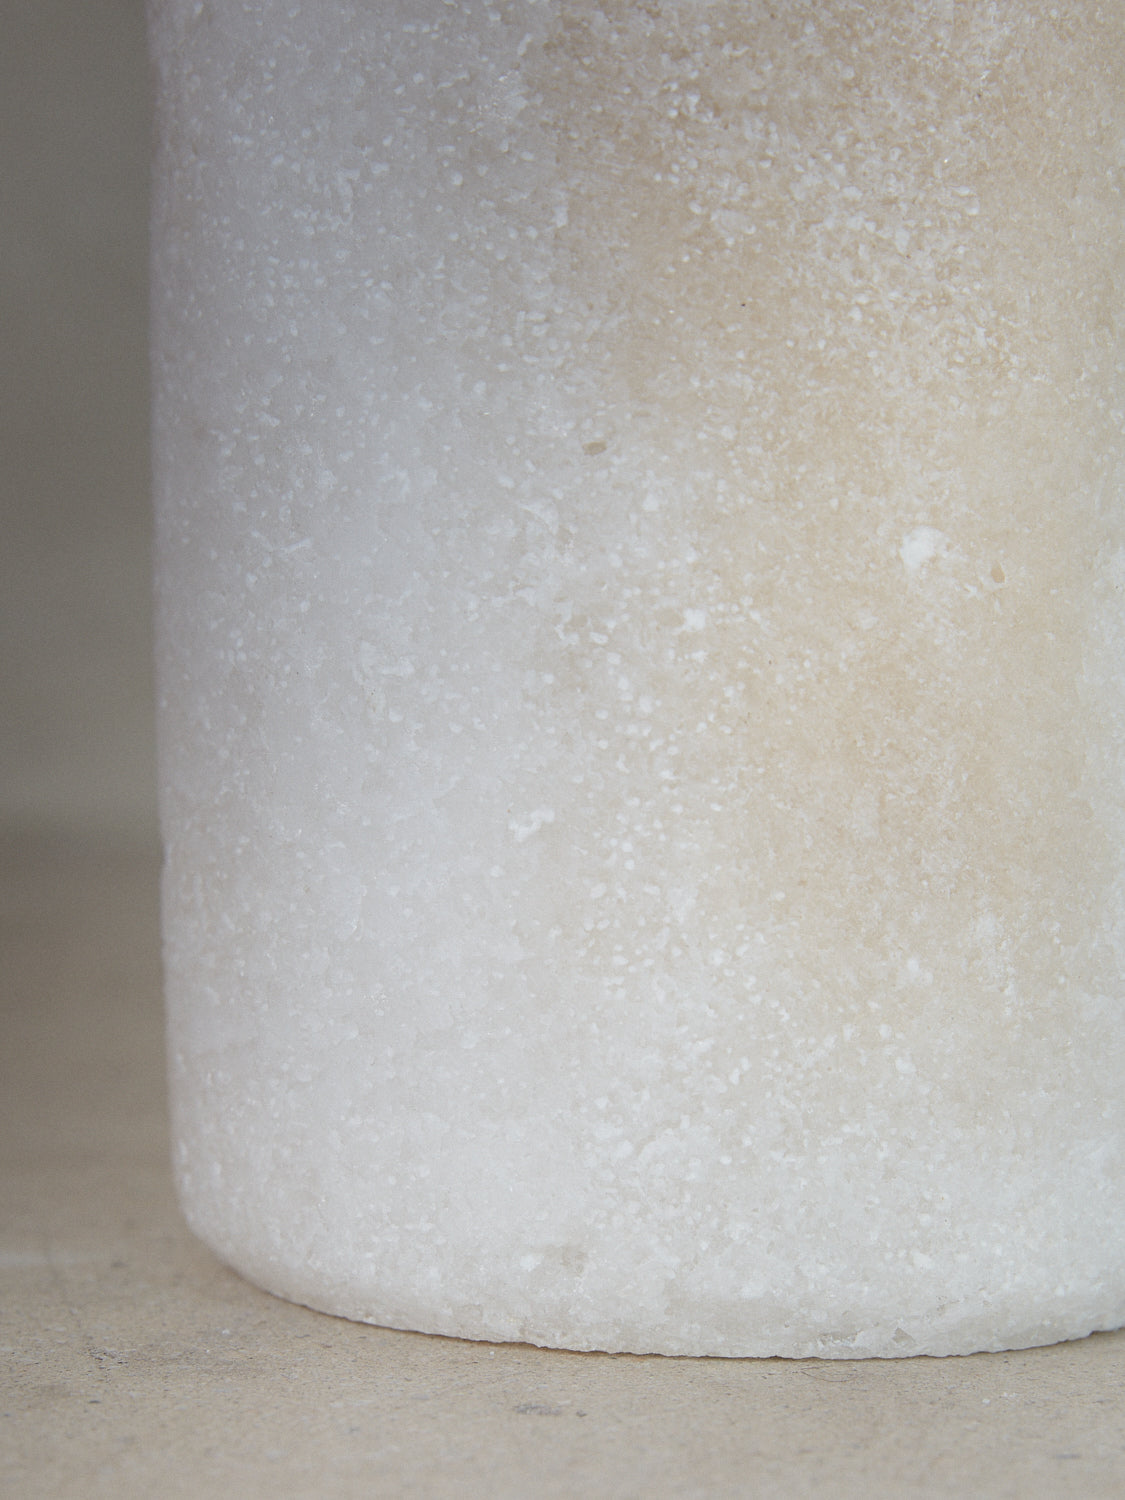 Large Salt Candleholder. Tall cylindrical candle holder emitting soft, filtered light through natural crystals hand carved of compressed salt